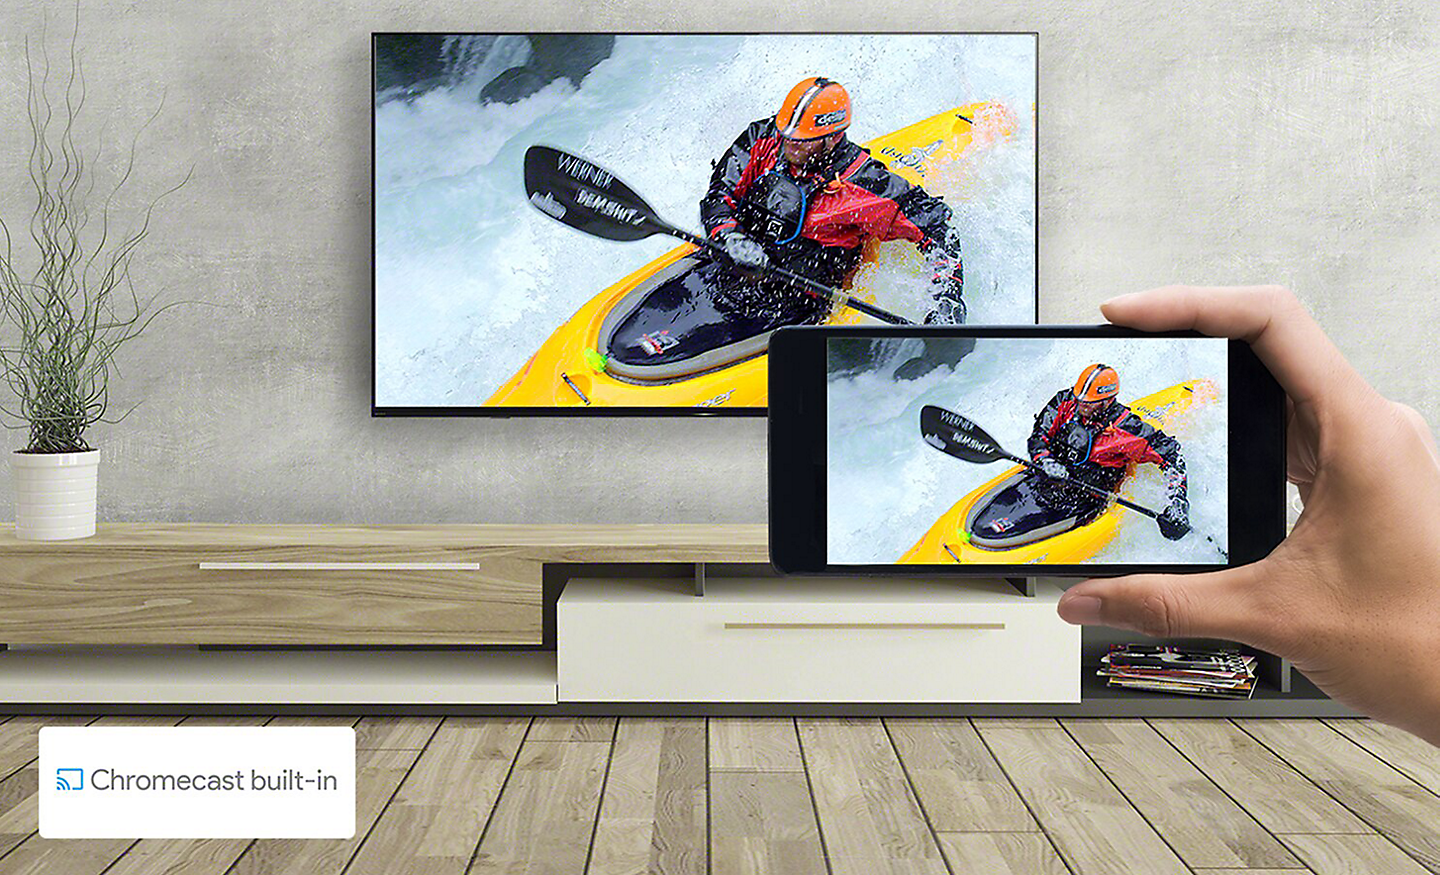 Bối cảnh phòng khách có TV và bàn tay cầm điện thoại thông minh. Cả hai màn hình hiển thị cùng một hình ảnh chèo thuyền kayak